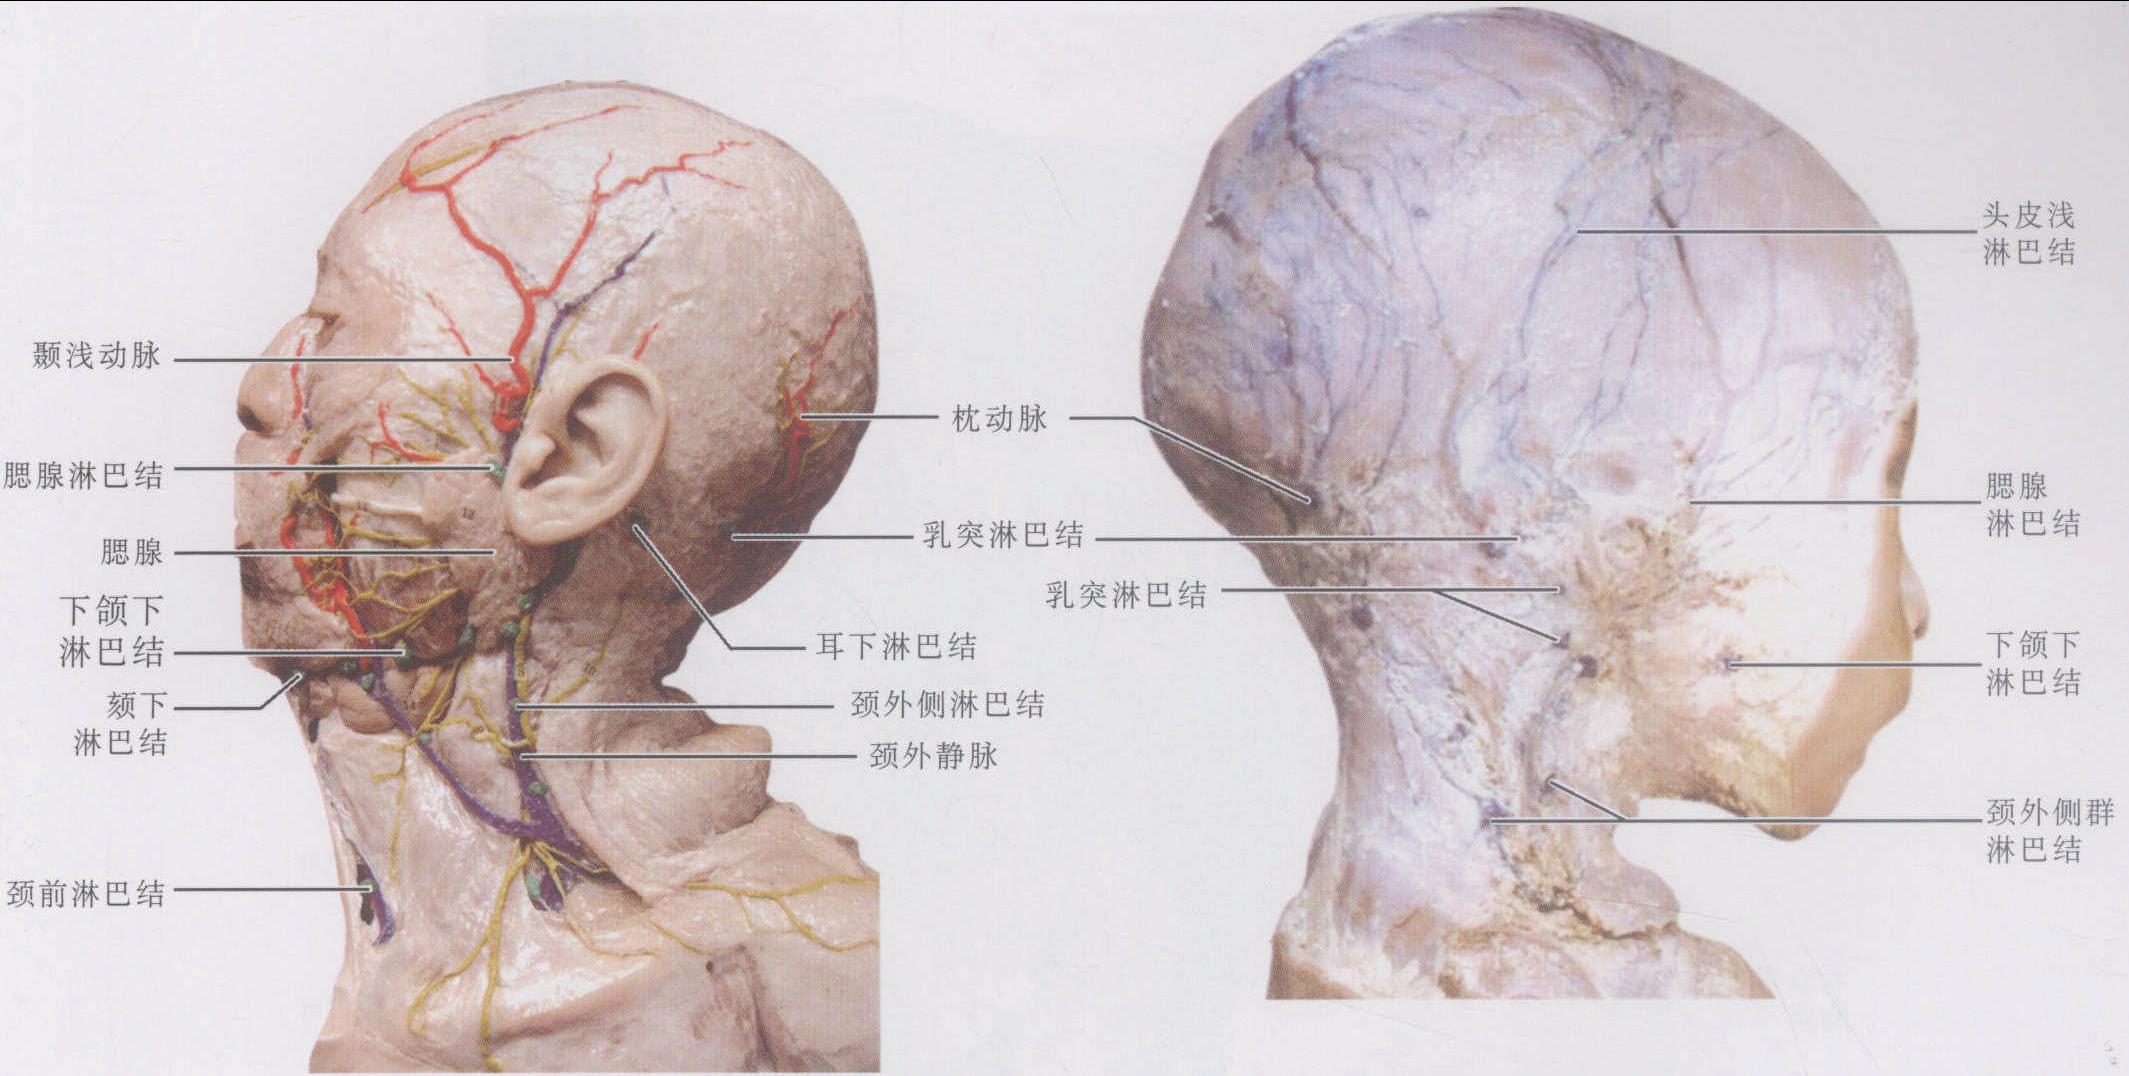 二、颈淋巴结分区-肿瘤外科手术-医学